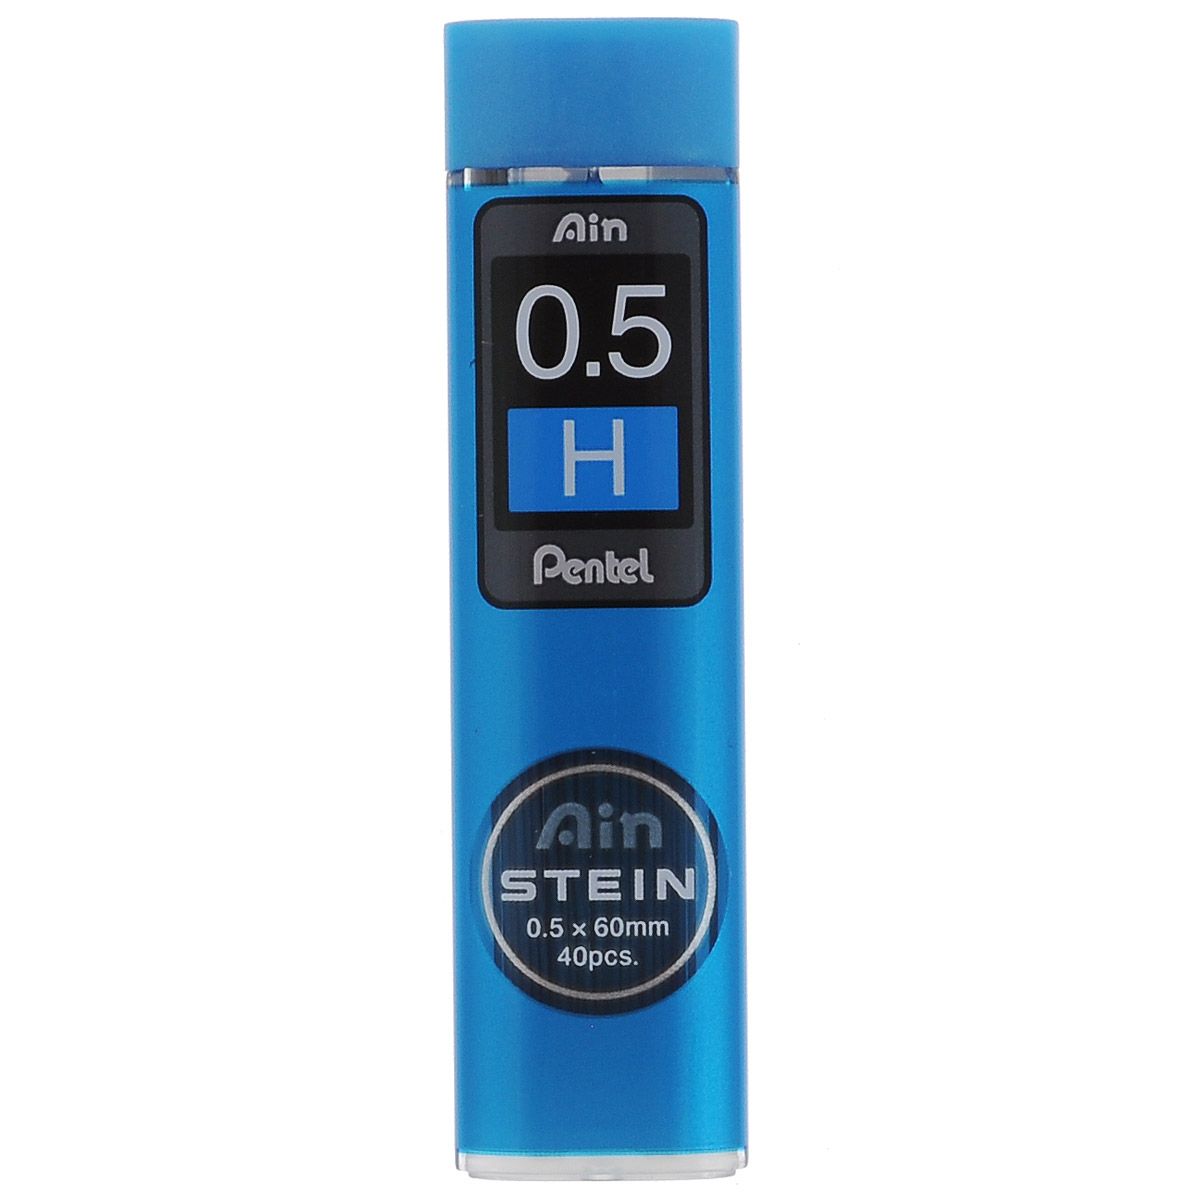 Pentel     Ain Stein H 0,5  40 